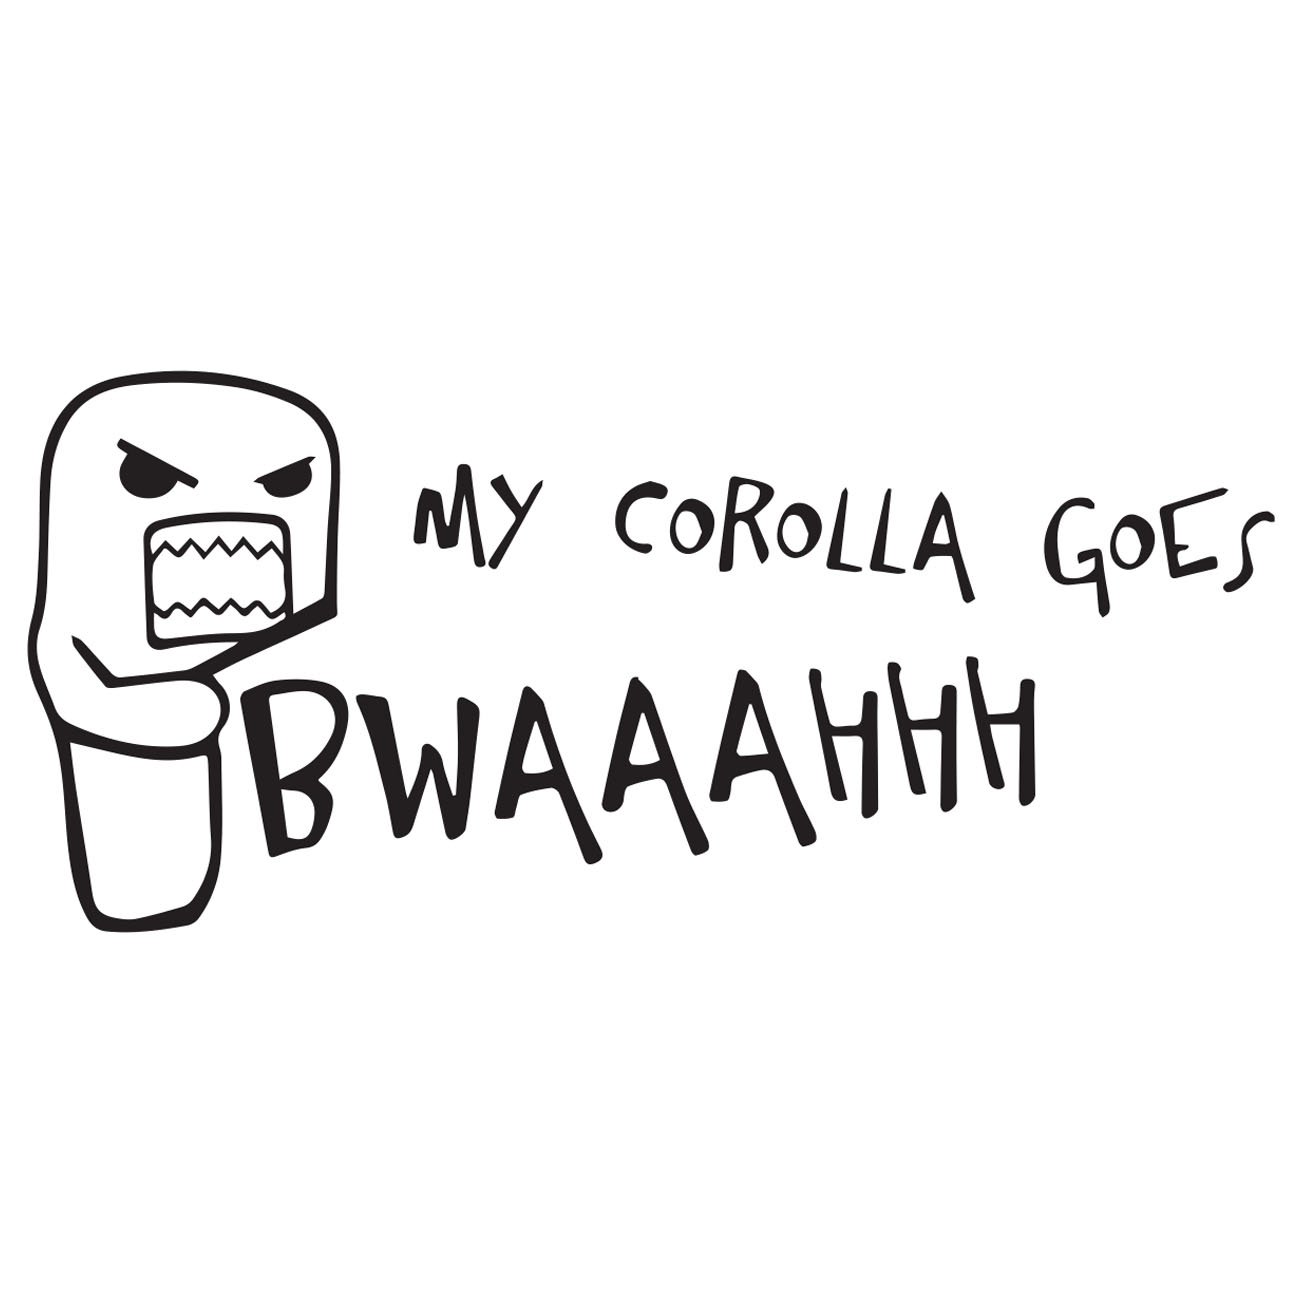 My Corolla goes bwaaahhh